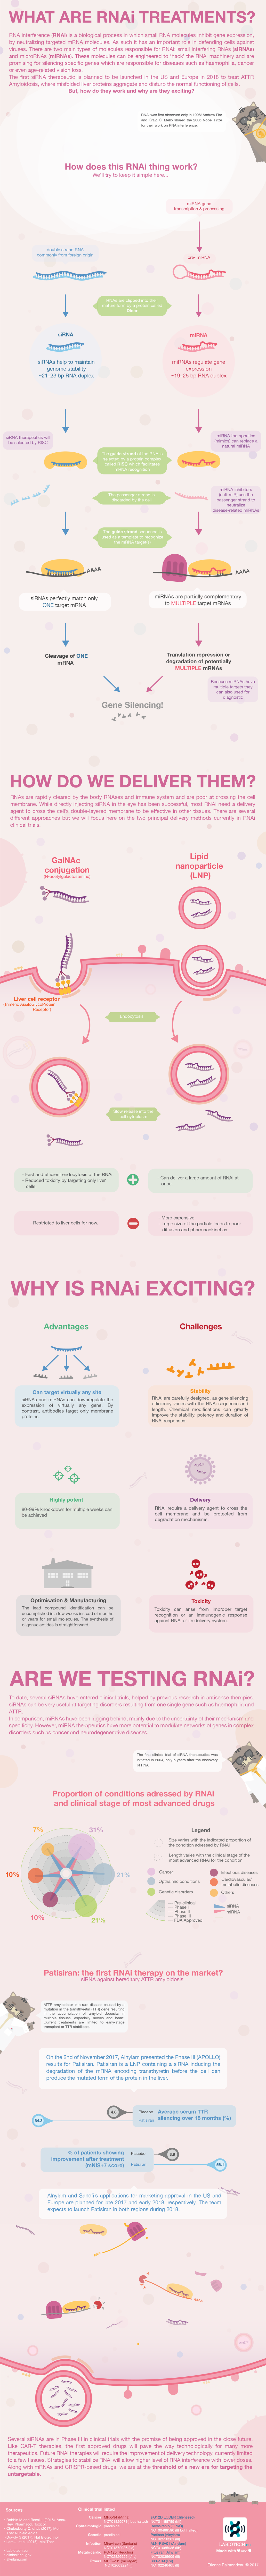 My helpful RNAi infographic